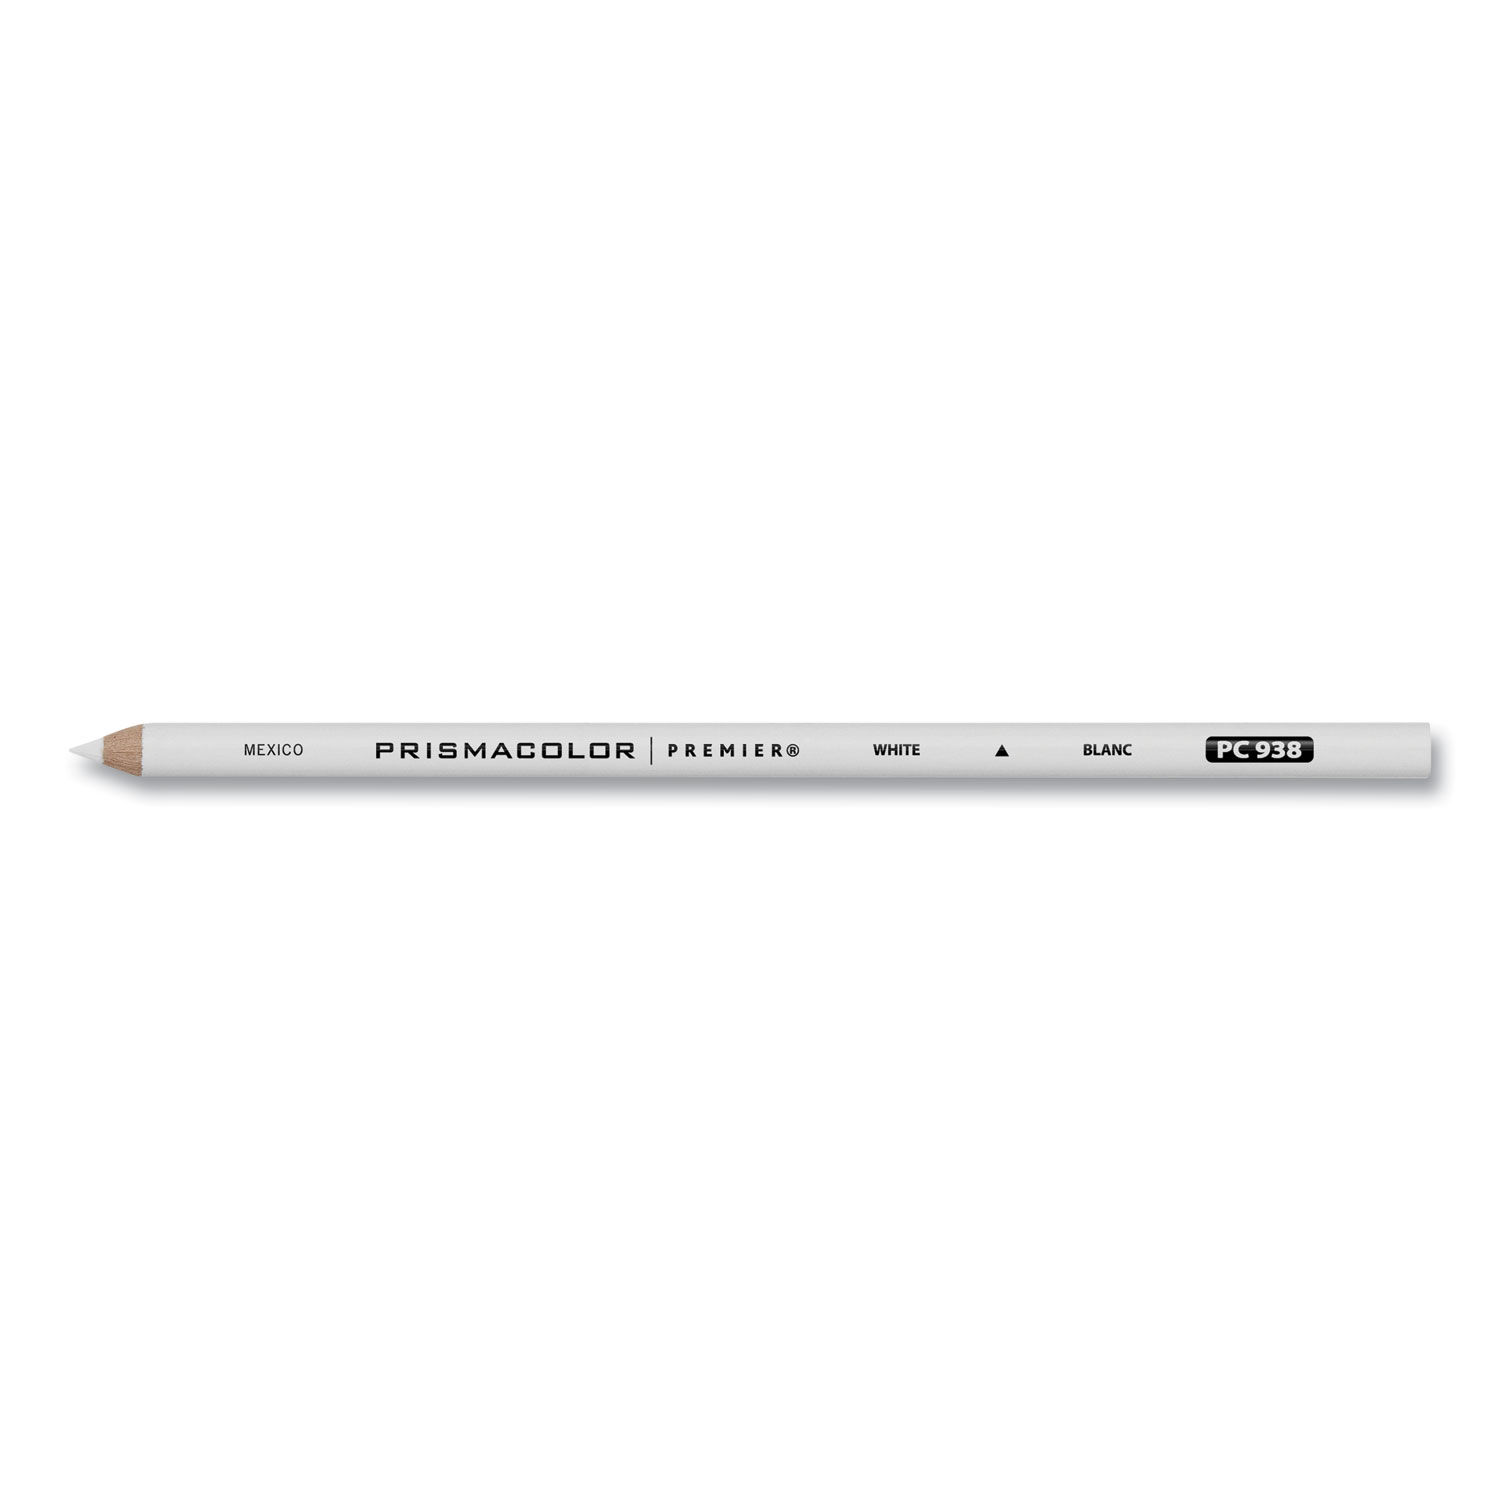 Premier Colored Pencil by Prismacolorandreg; SAN3365